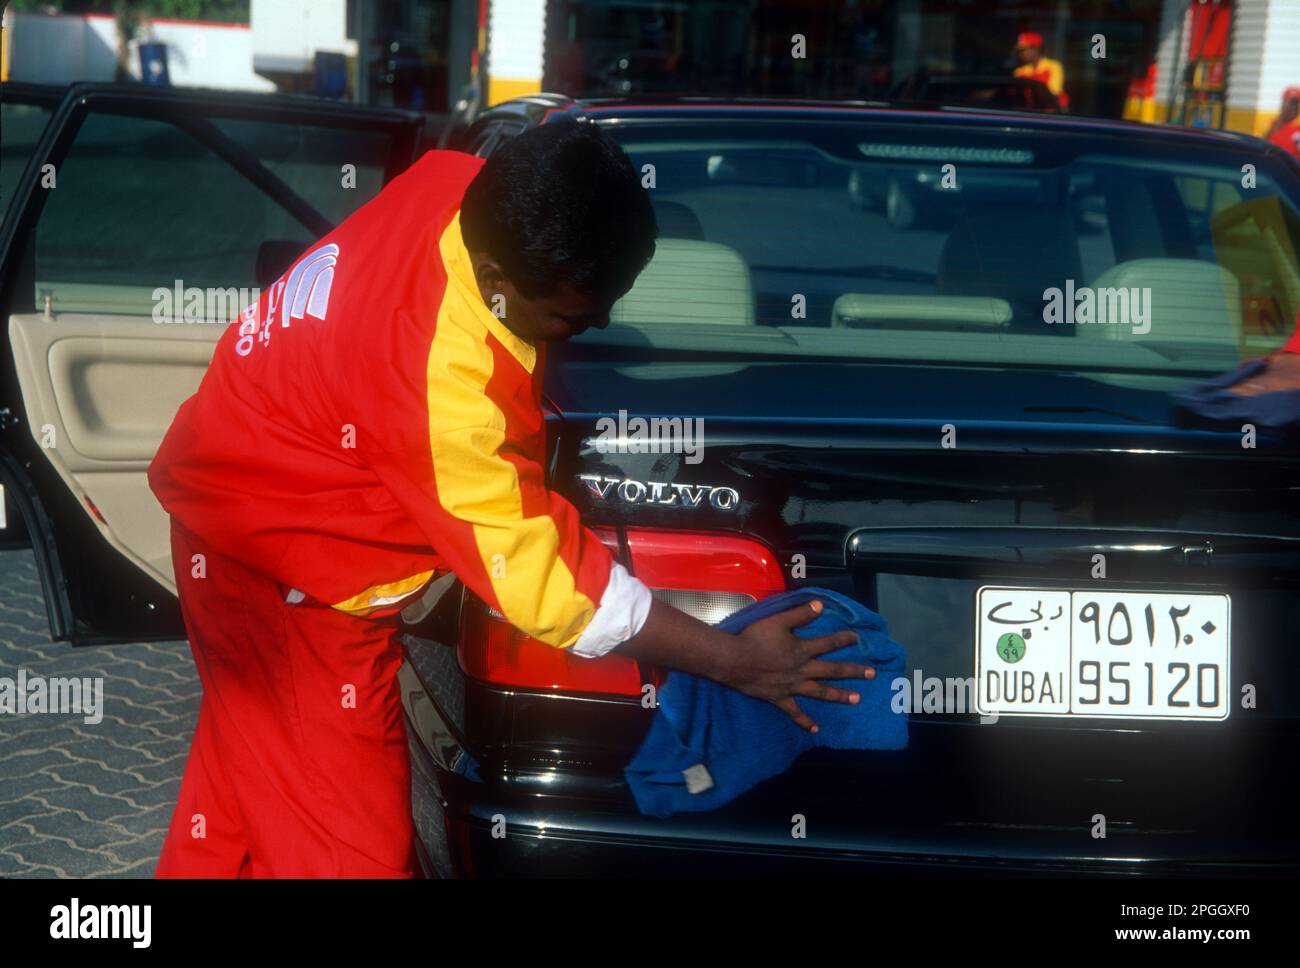 Lavoratore migrante del sub-continente Indo-Pak che pulisce un'auto a Dubai, negli Emirati Arabi Uniti Foto Stock